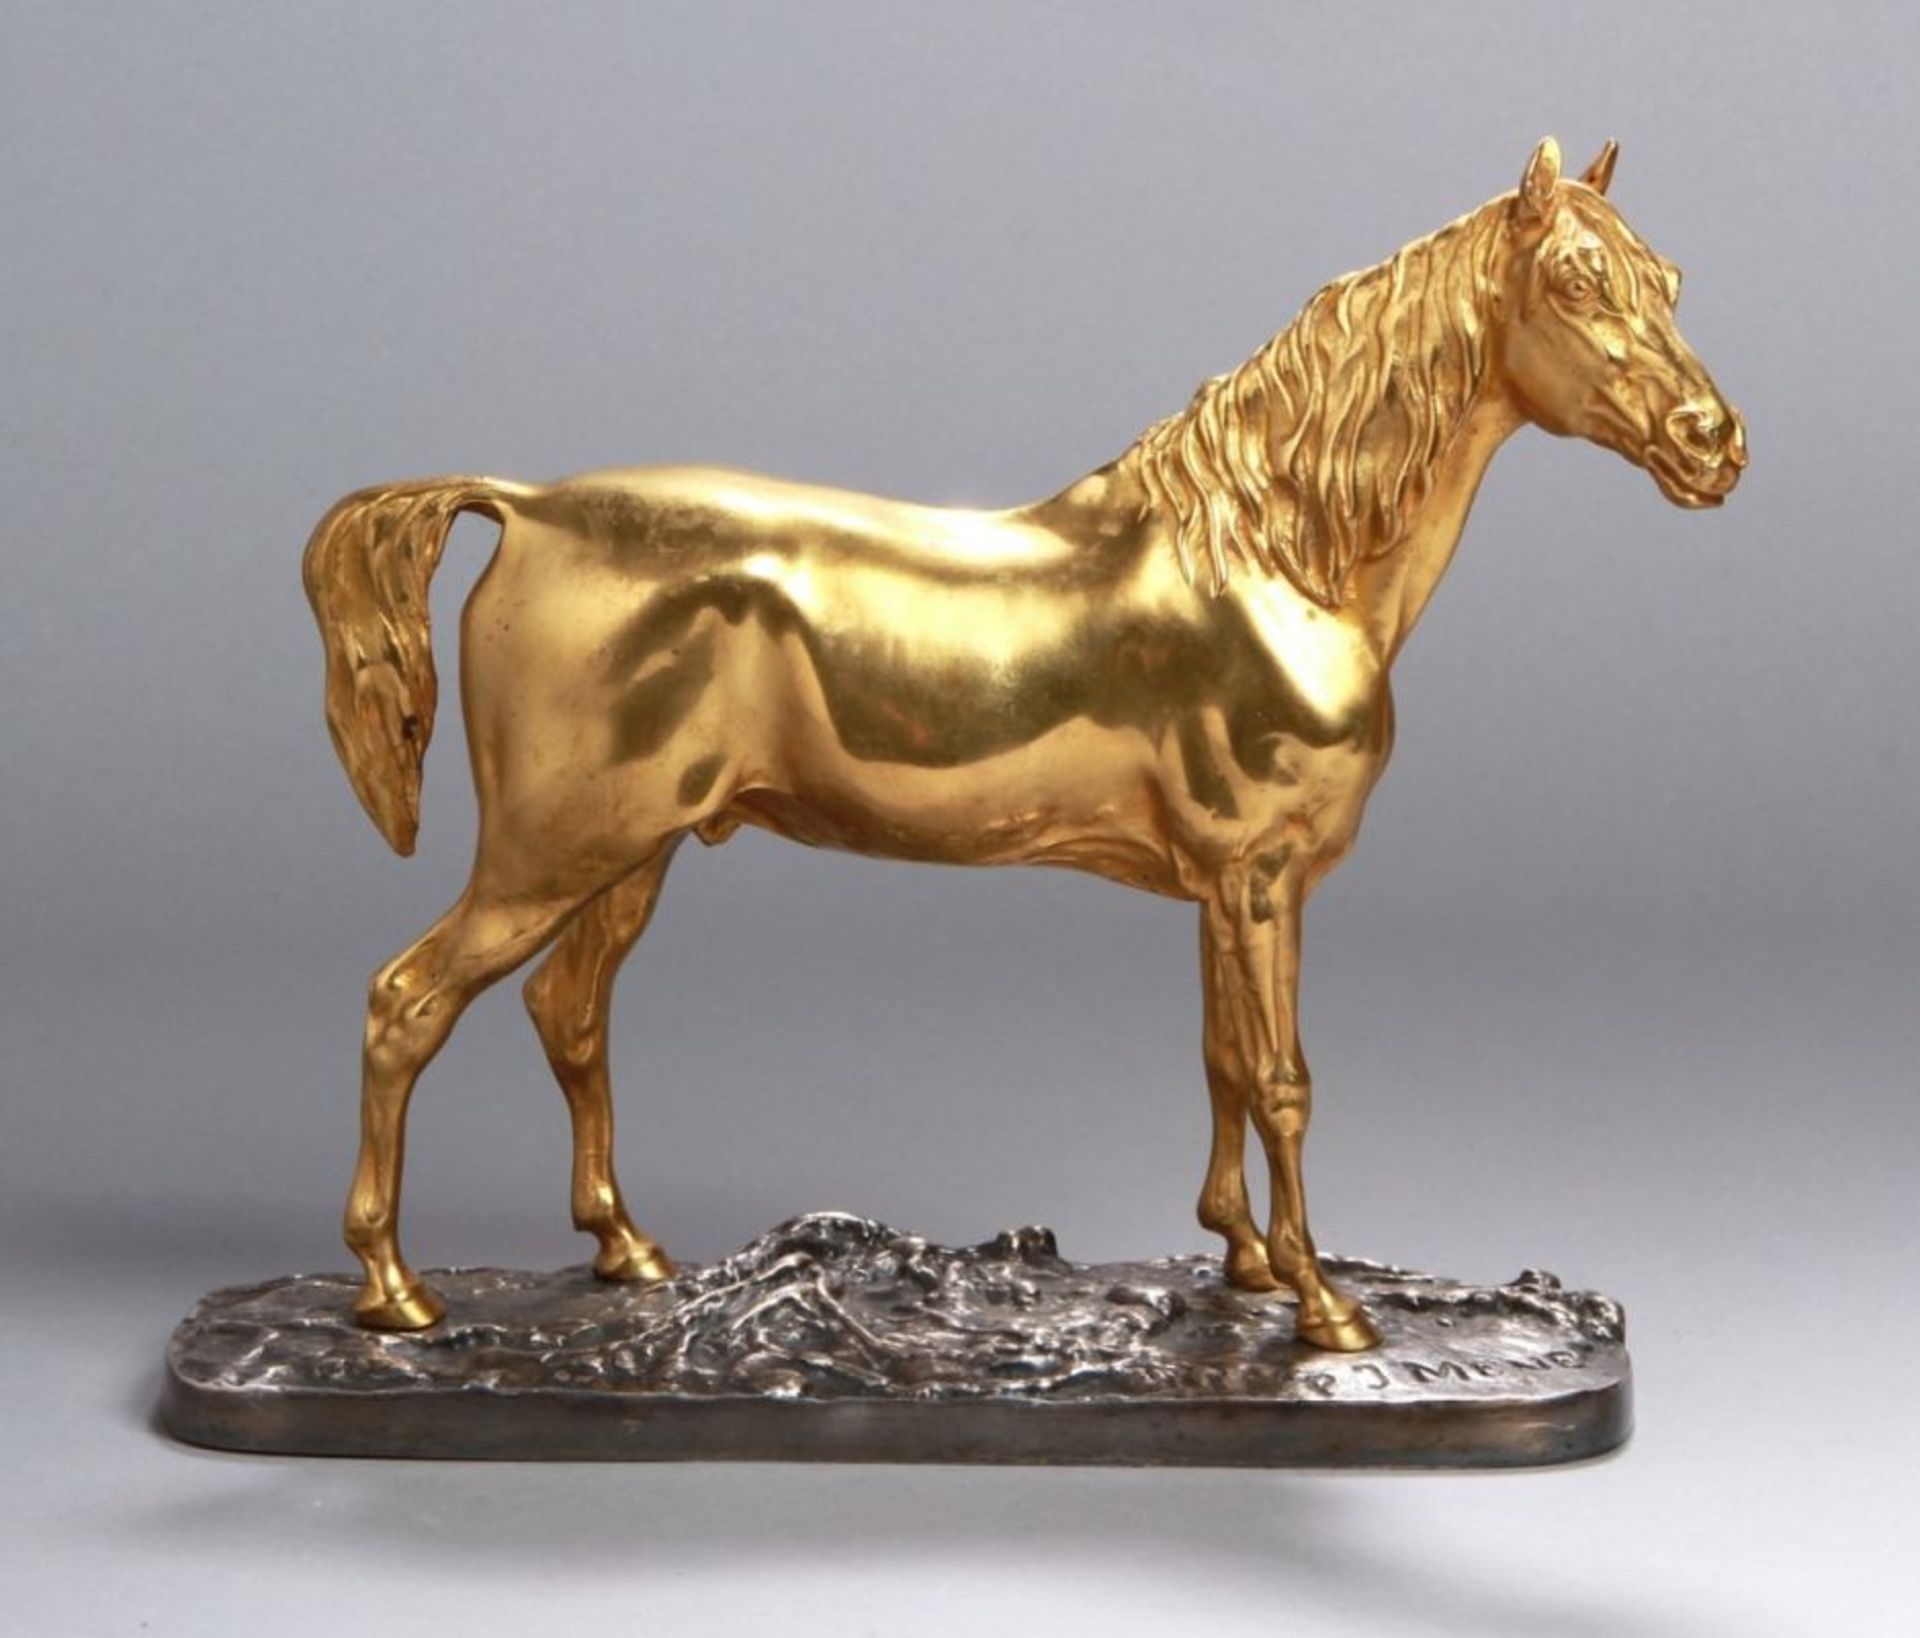 Bronze-Tierplastik, "Pferd", Mene, Pierre Jules, Paris 1810 - 1879 ebenda, vollplastische,